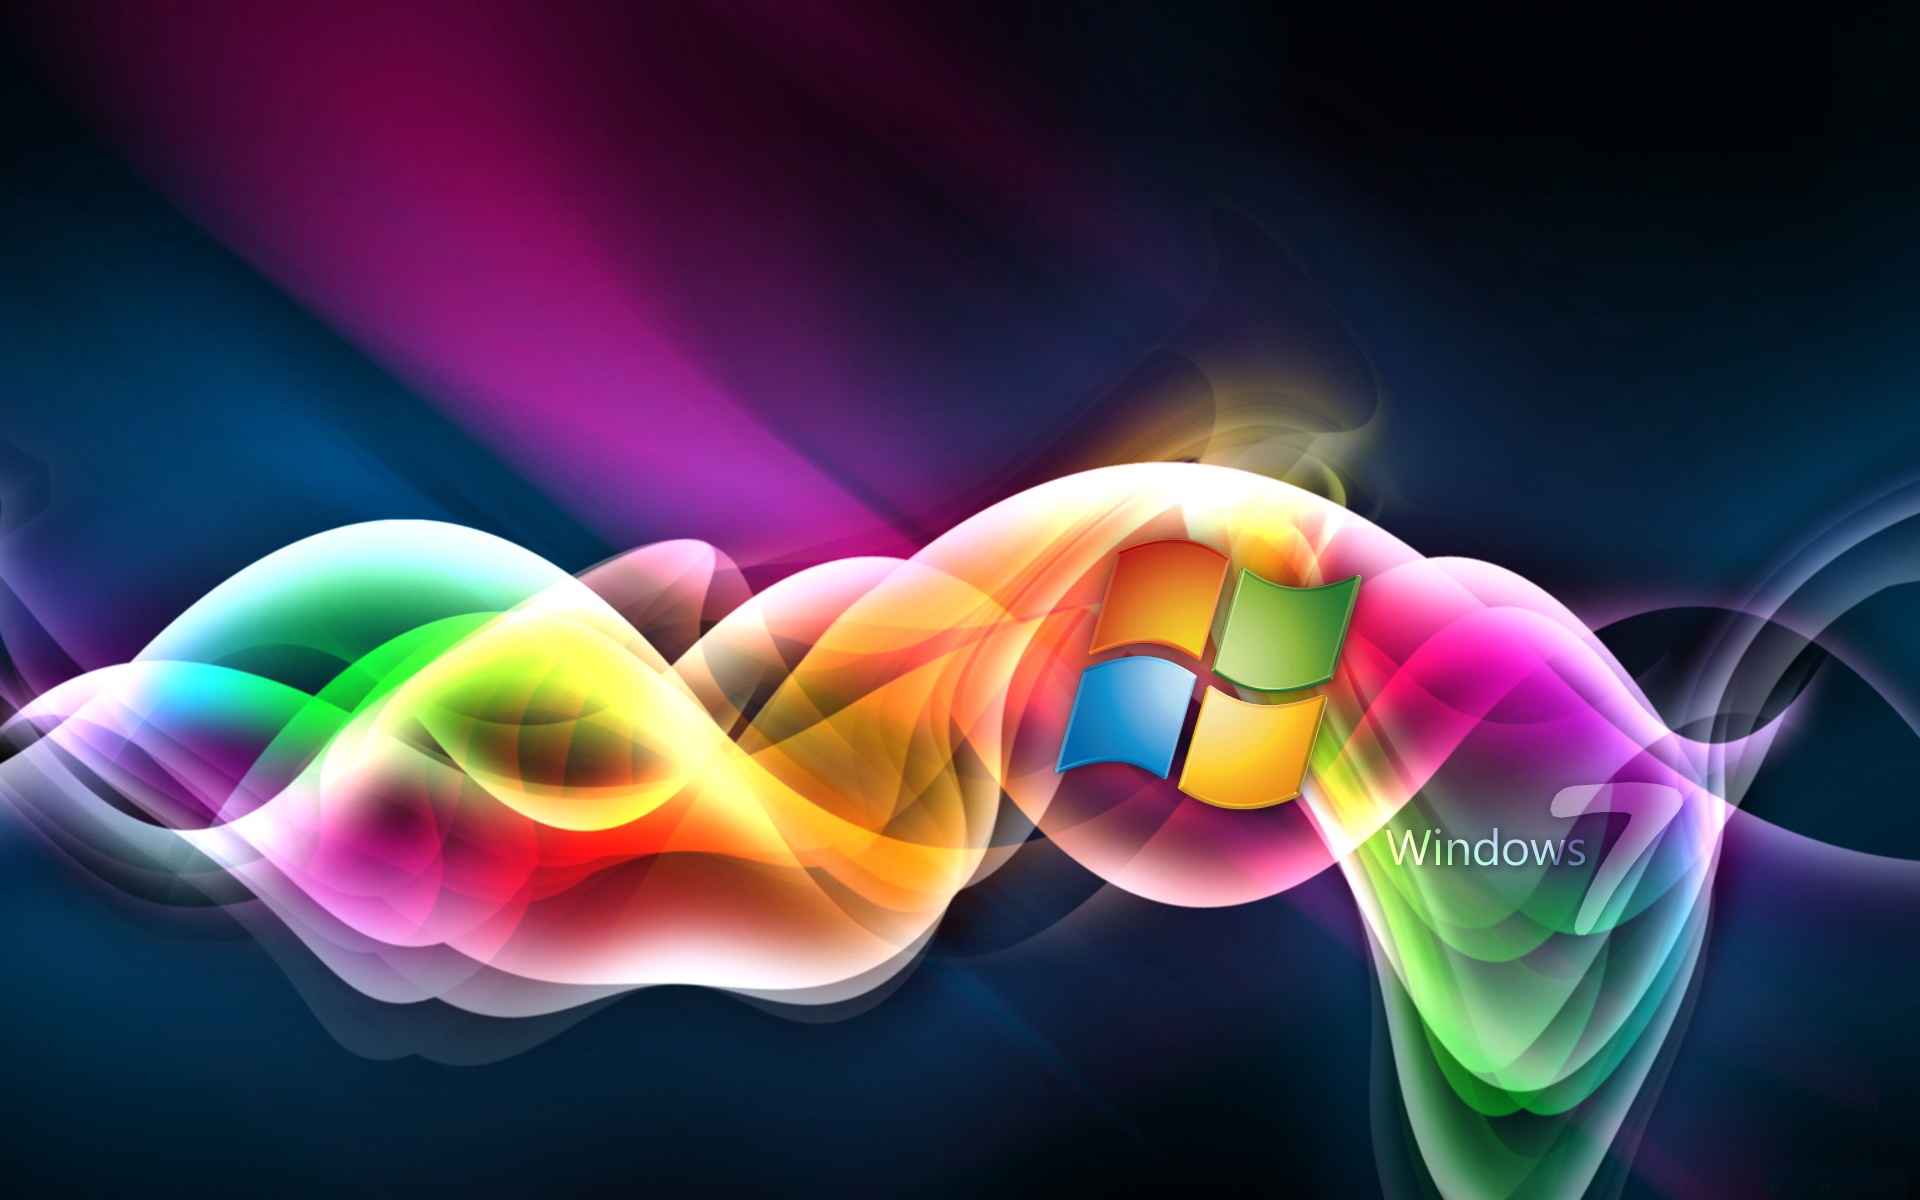 Cảm nhận sự mới lạ đầy sáng tạo trên màn hình của bạn với những hình nền Windows 8 độc đáo. Chúng tôi mang đến cho bạn bộ sưu tập hình ảnh tuyệt vời từ giao diện sáng tạo của Windows